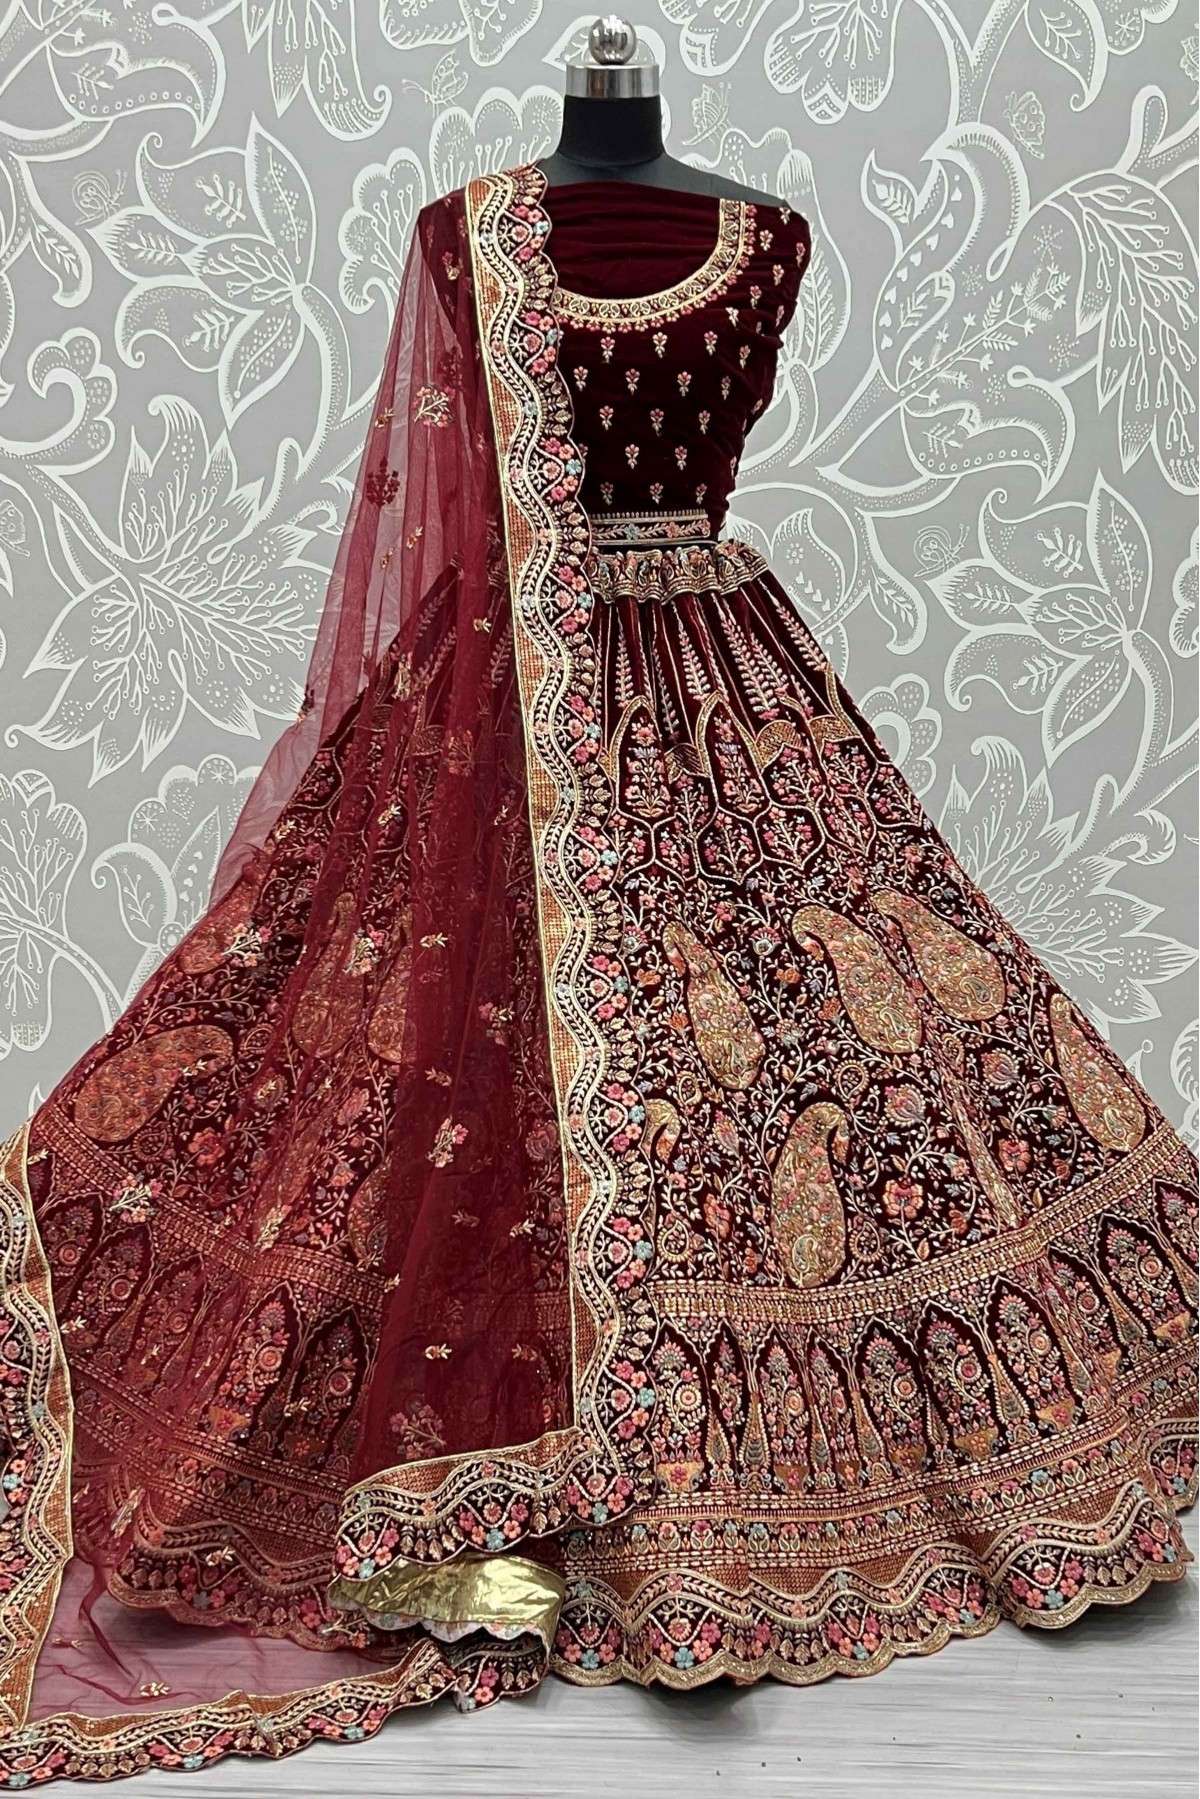 Velvet Embroidery Lehenga Choli In Maroon Colour - LD5416183